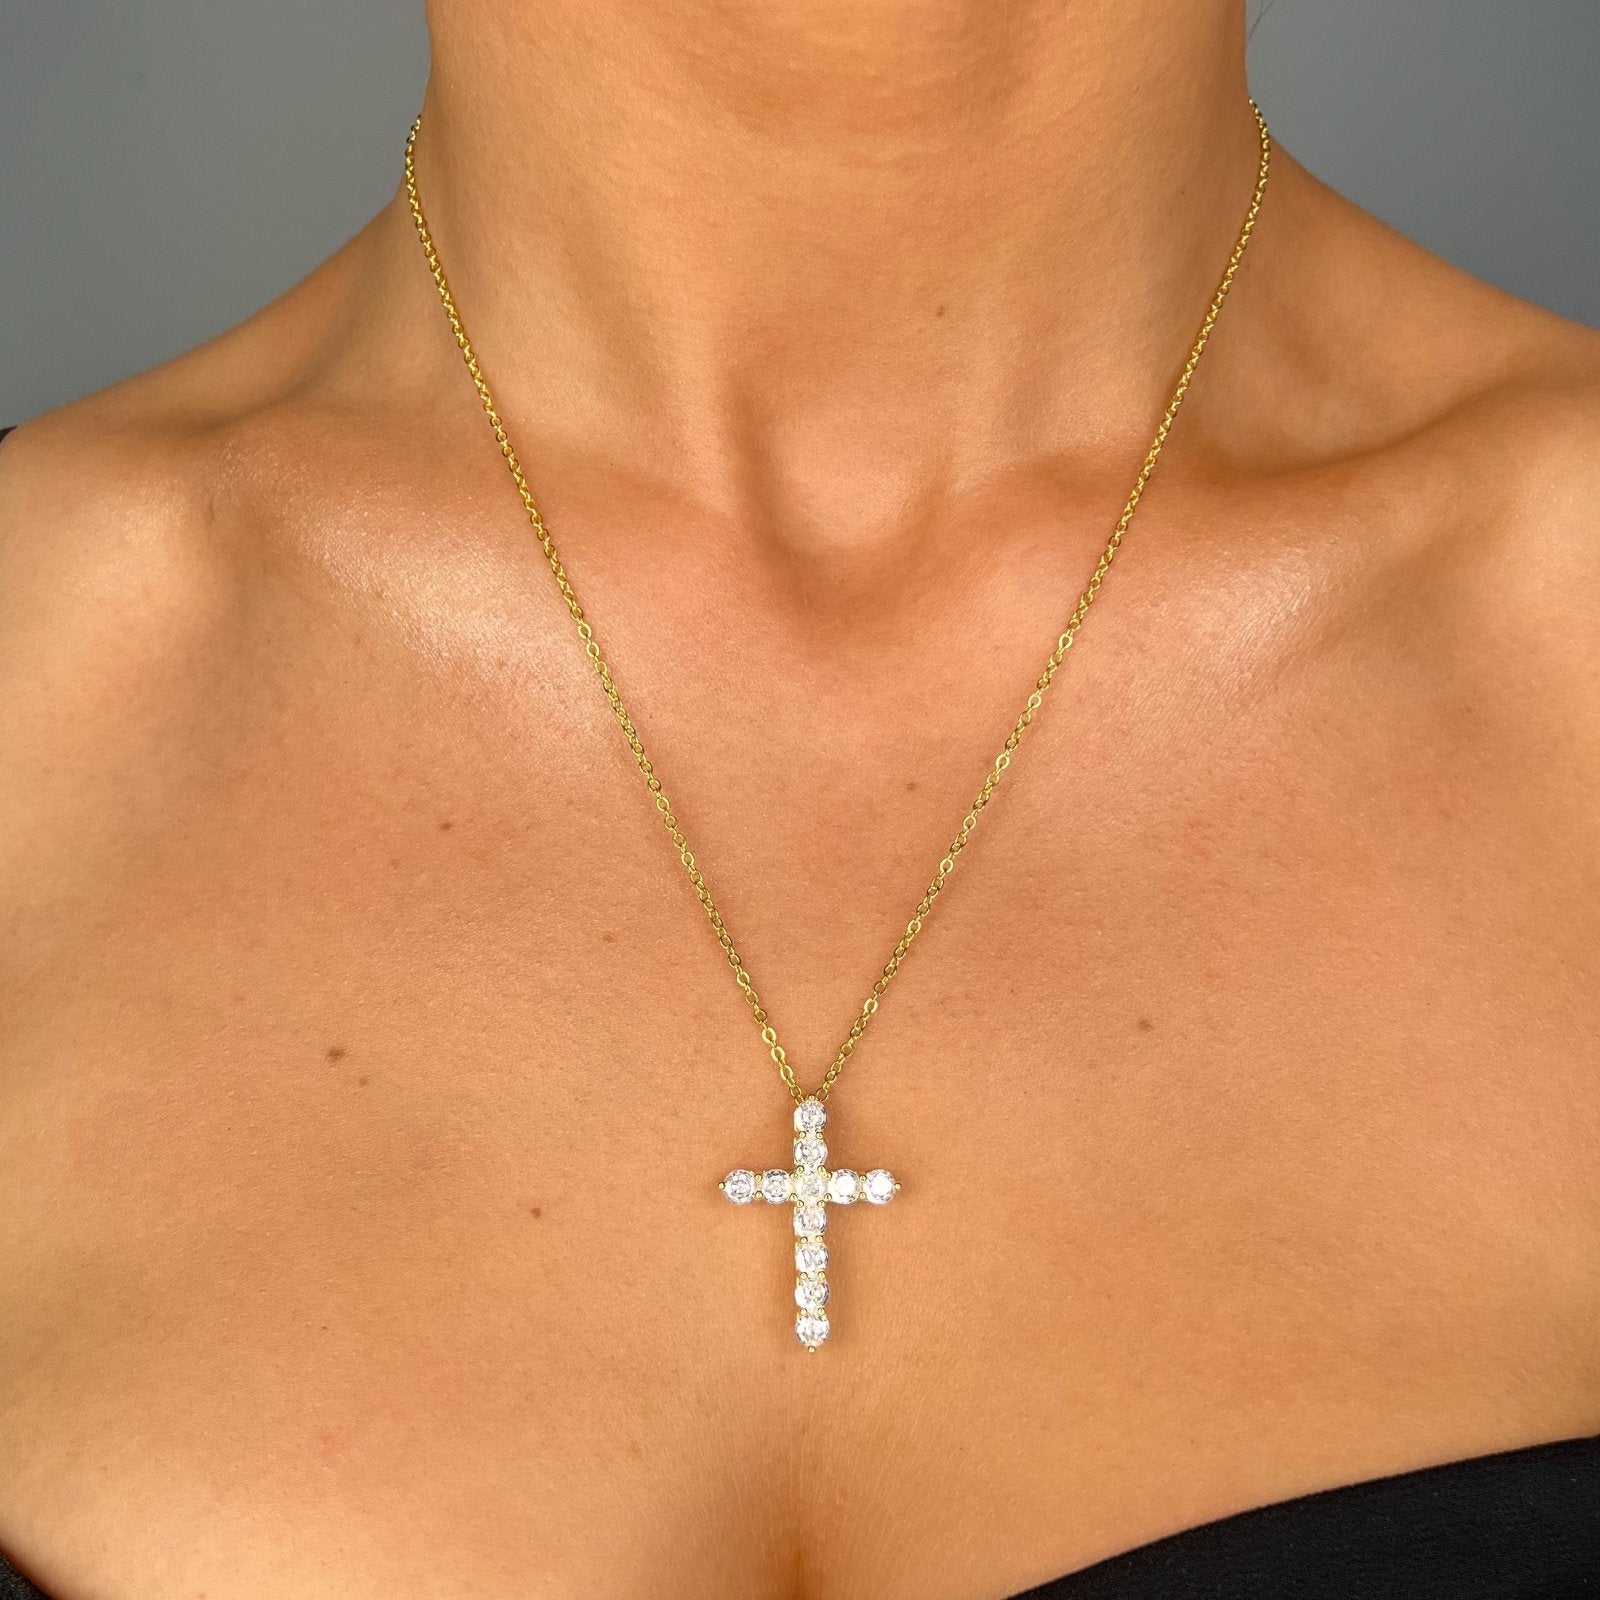 Gold Mini Cross Pendant Necklace - Luxe Emporium x